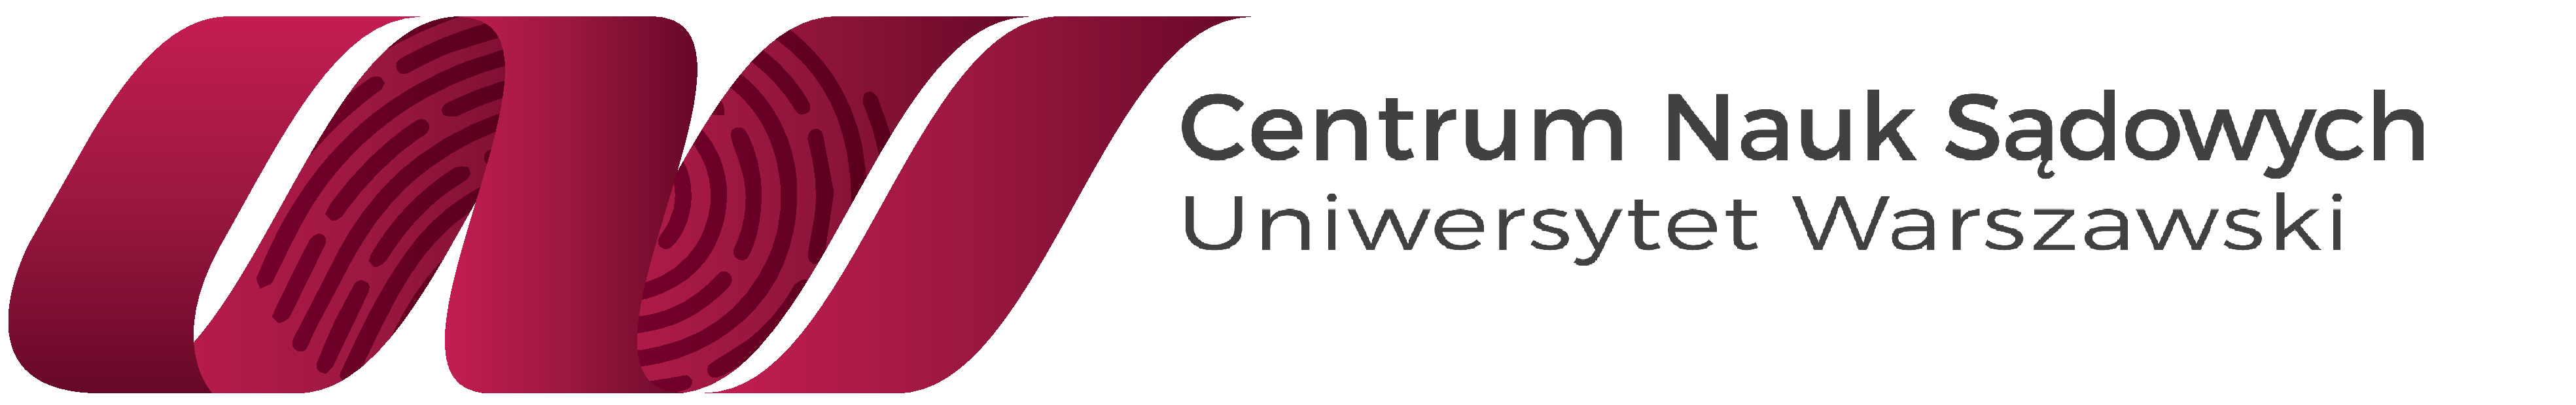 Centrum Nauk Sądowych Logo